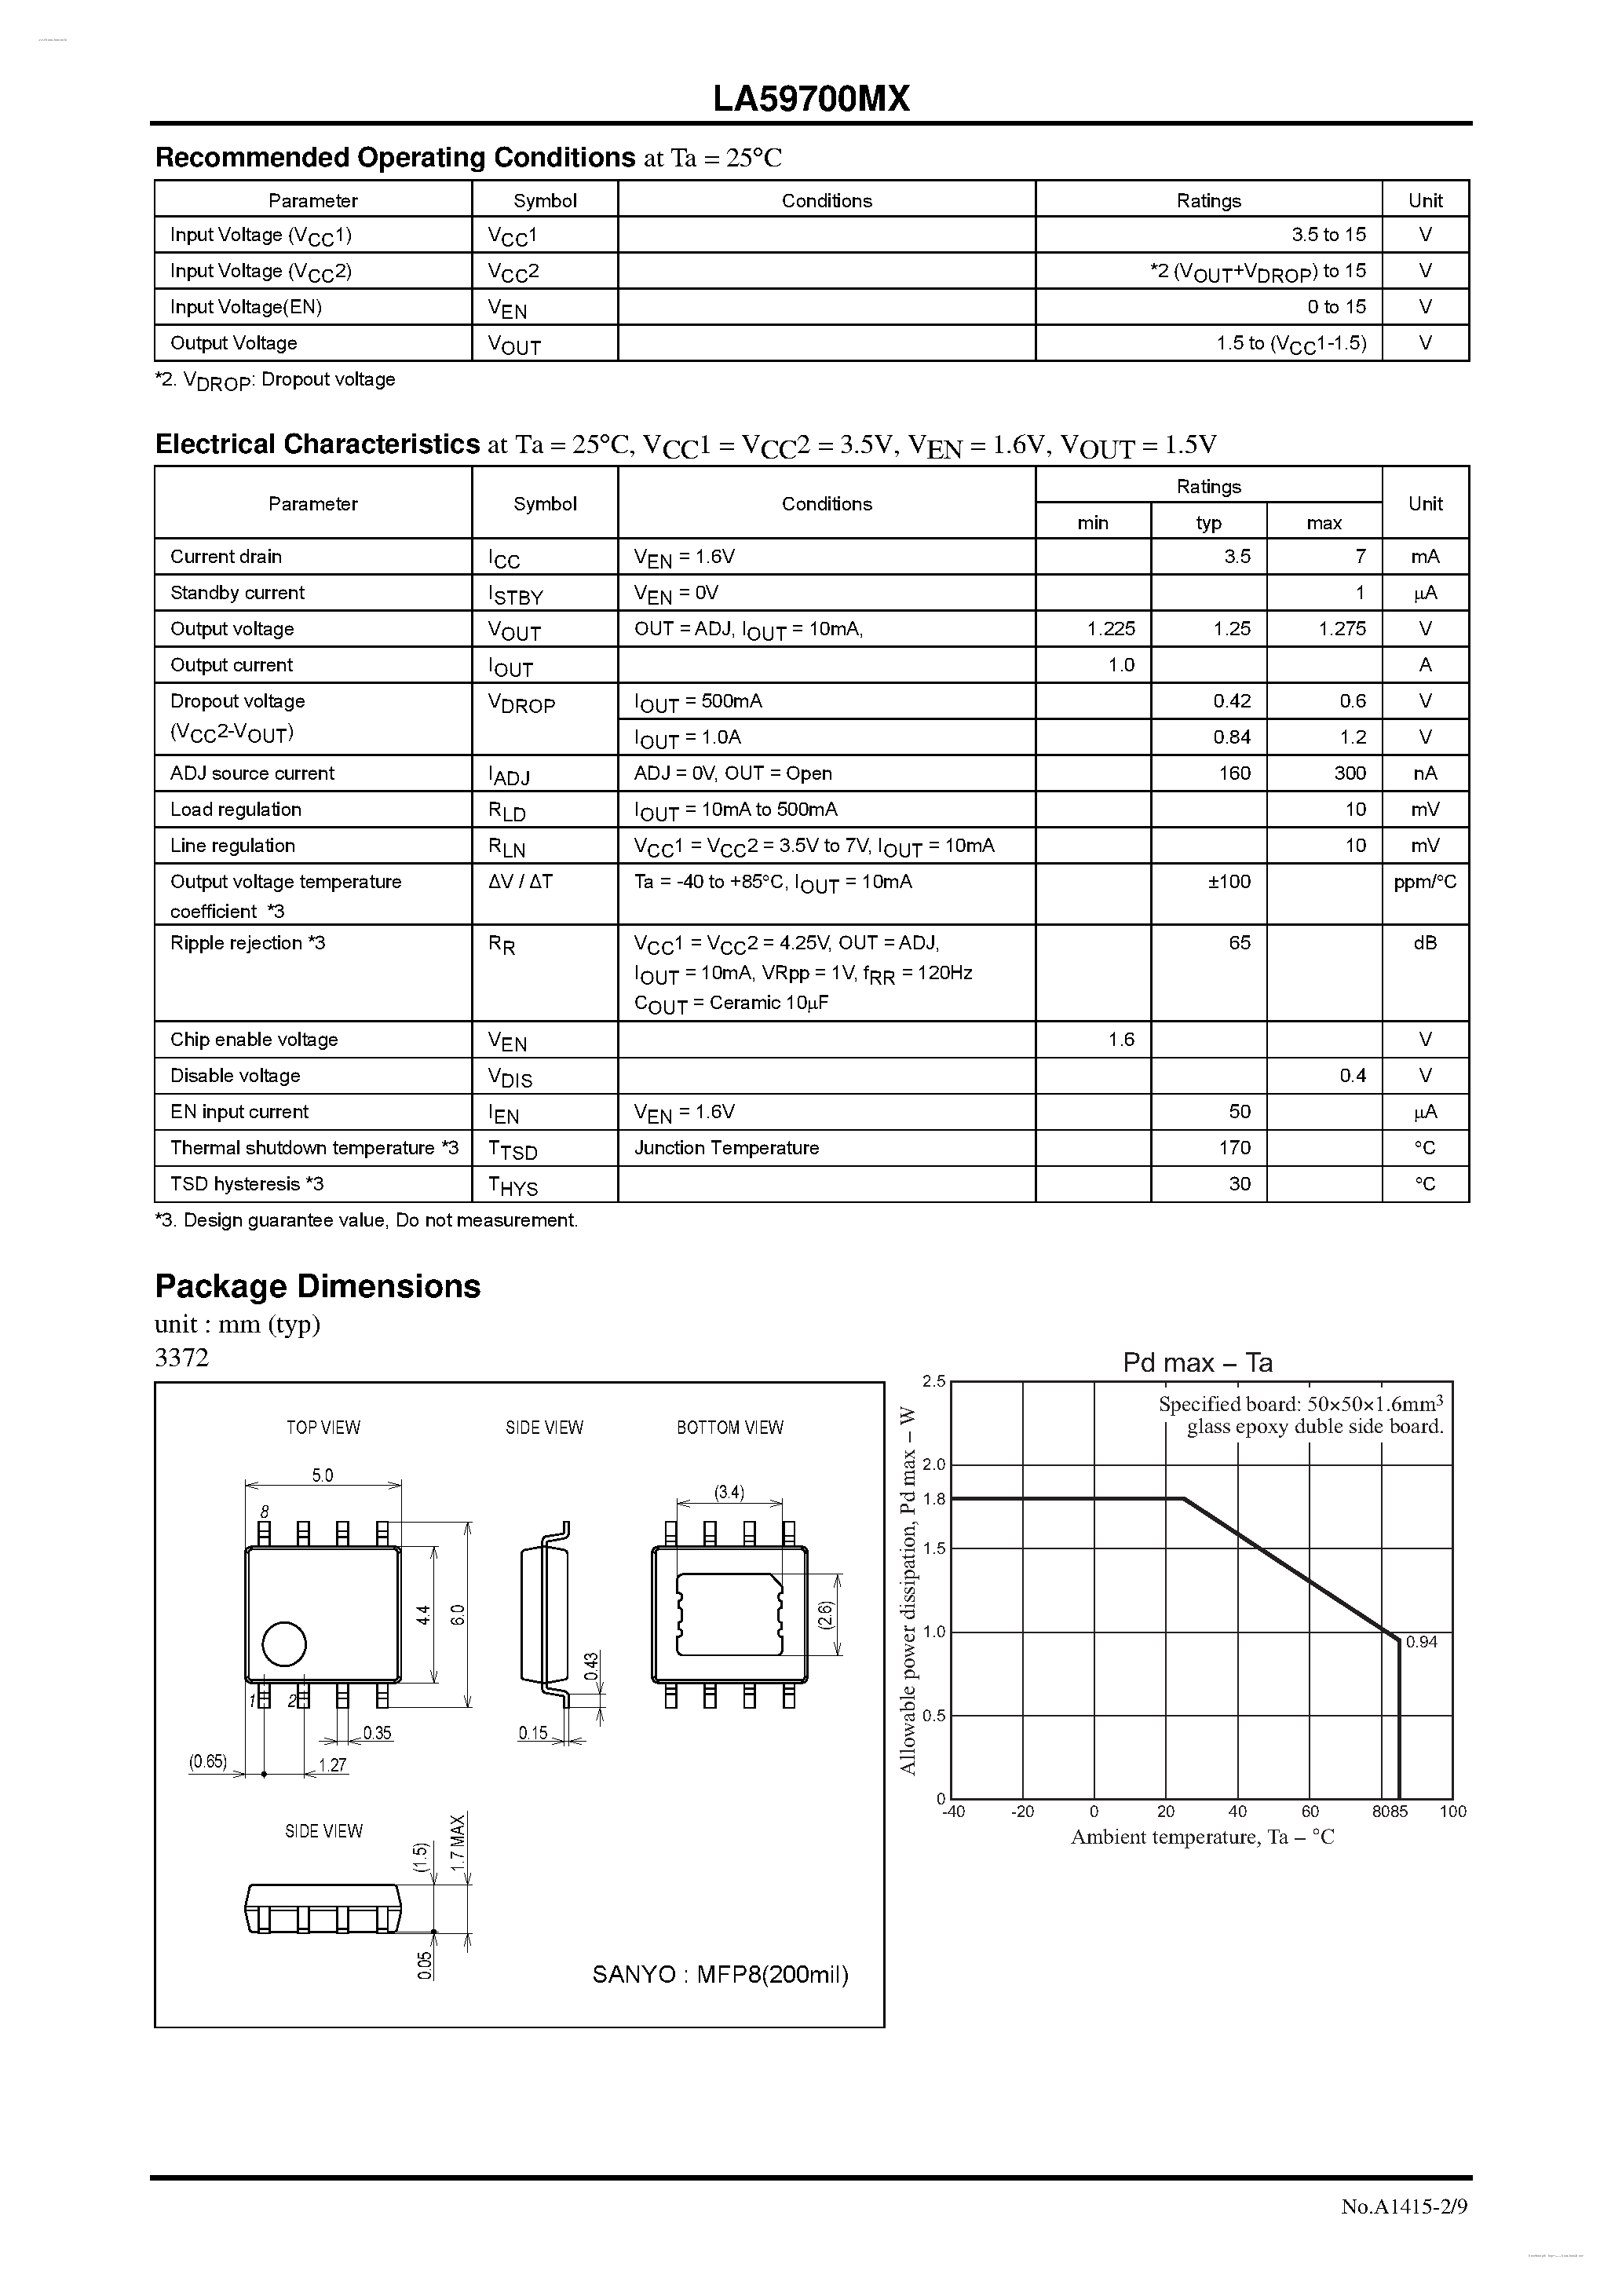 Datasheet LA59700MX - Adjustable Voltage Type Regulator page 2